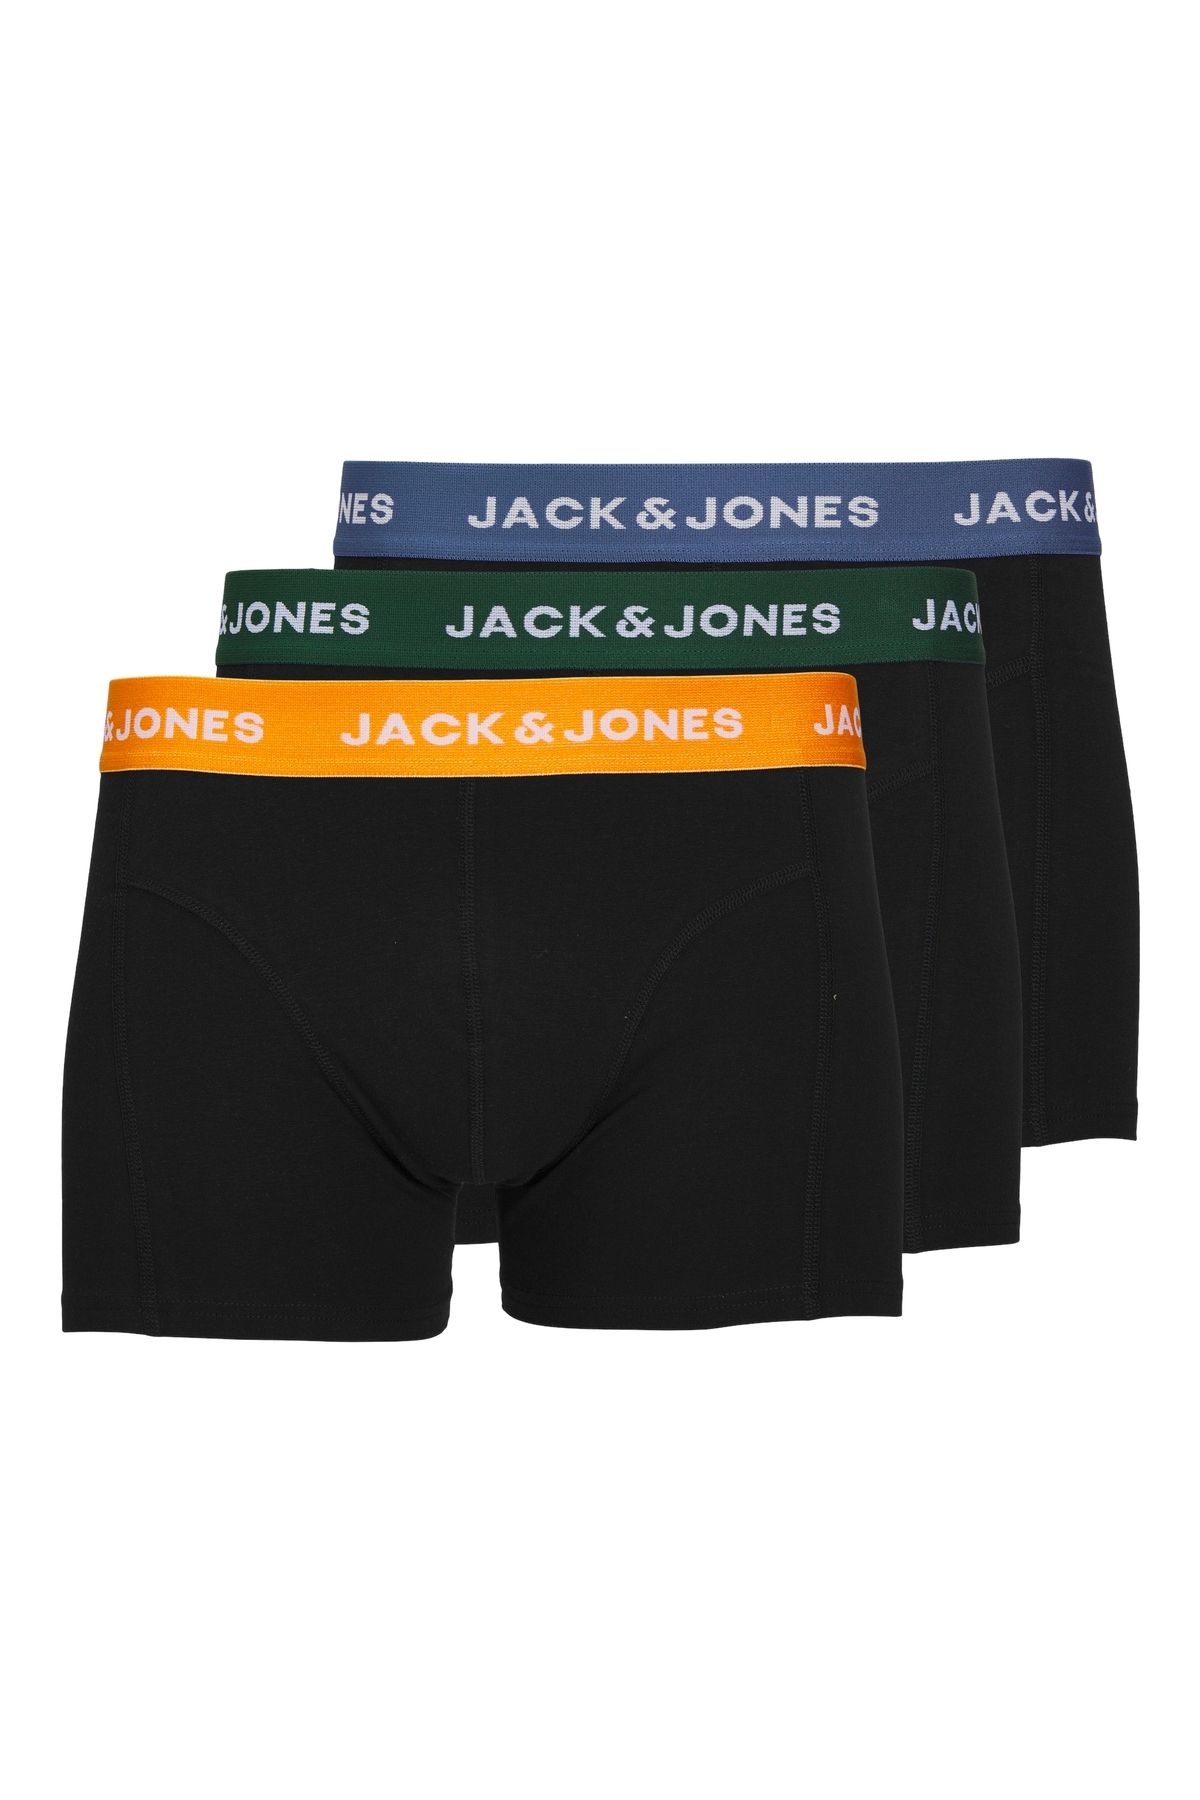 Jack & Jones Jack Jones Jacgab Trunks 3 Pack Noos Pls Erkek Yeşil Büyük Beden Boxer 12259899-21